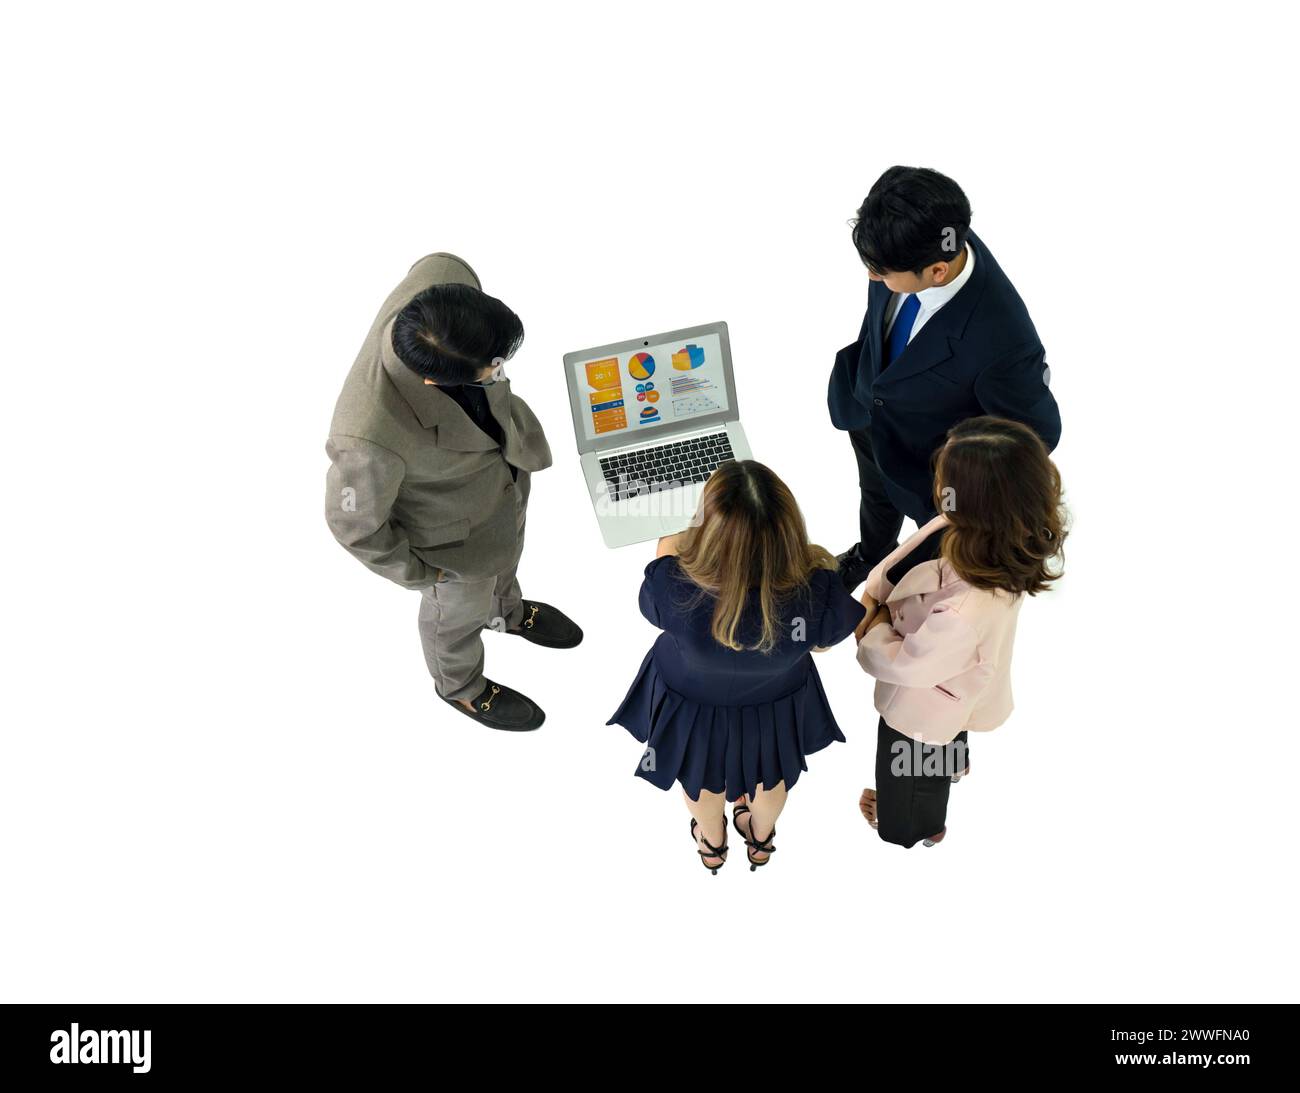 Plusieurs professionnels se réunissent dans une salle blanche et lumineuse, tous centrés sur un écran d'ordinateur portable. Banque D'Images